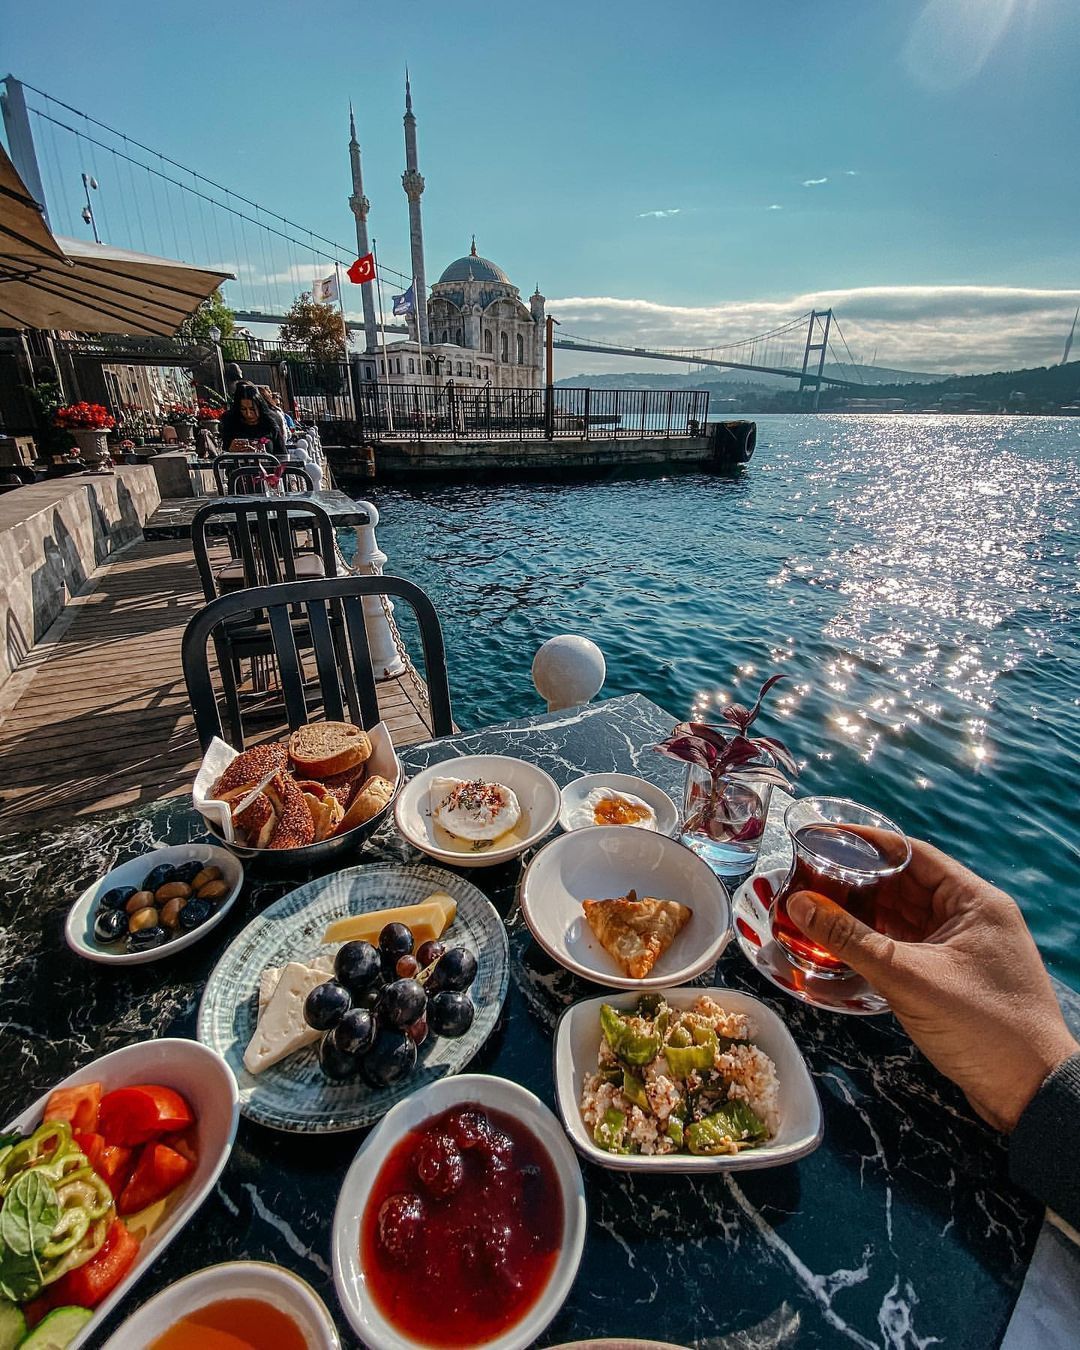 Что попробовать в турции из еды. топ 10 блюд турецкой кухни